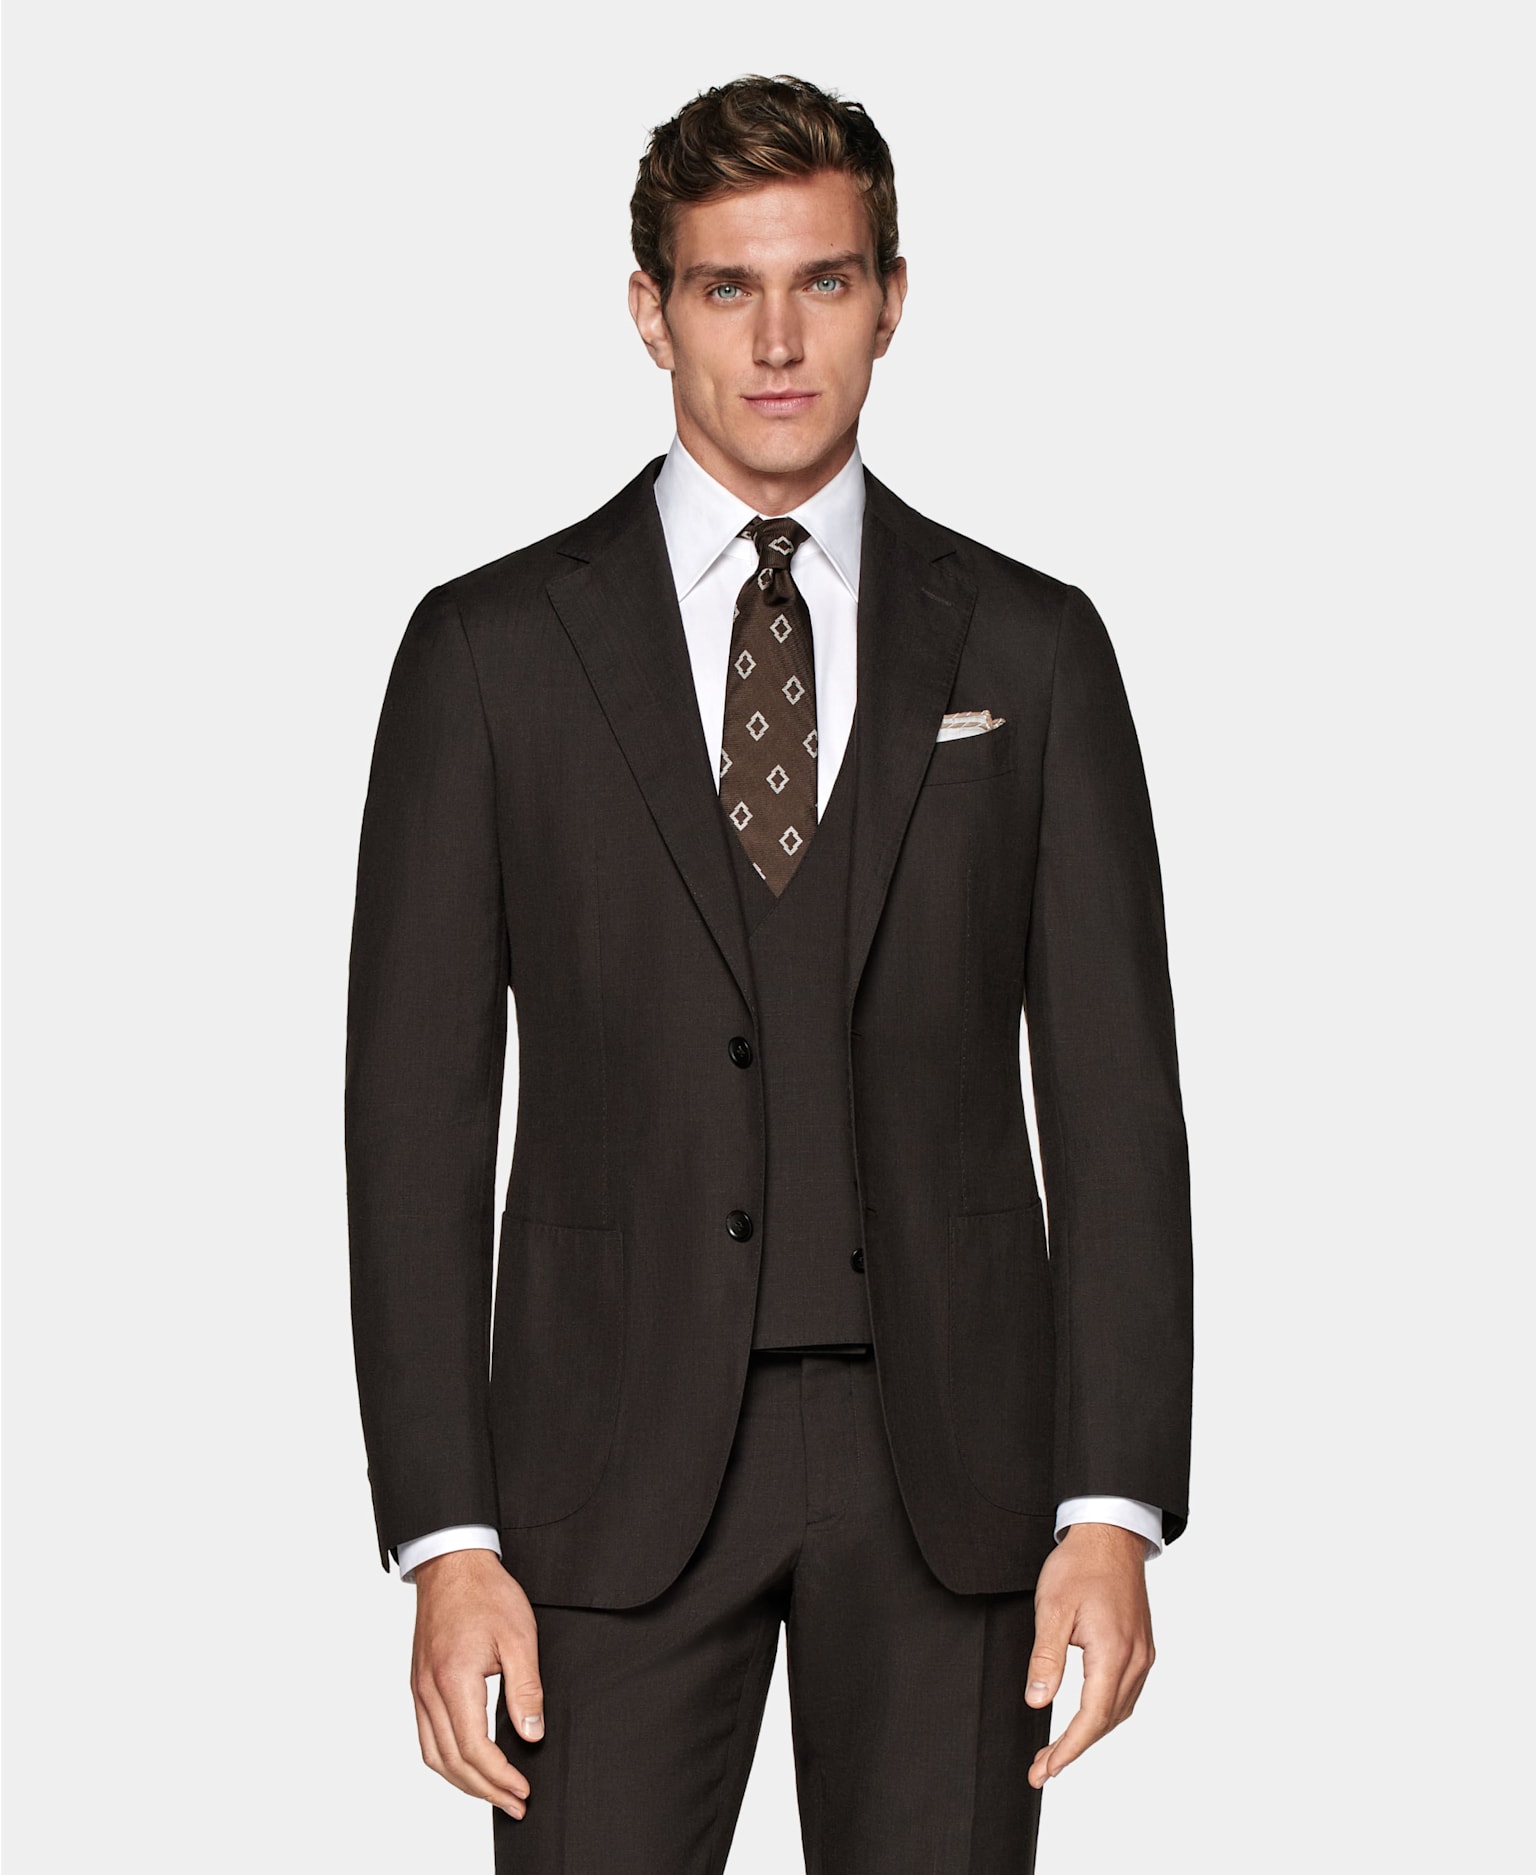 Ciemnobrązowy trzyczęściowy garnitur zestawiony z białą koszulą, brązowym krawatem we wzory i poszetką.